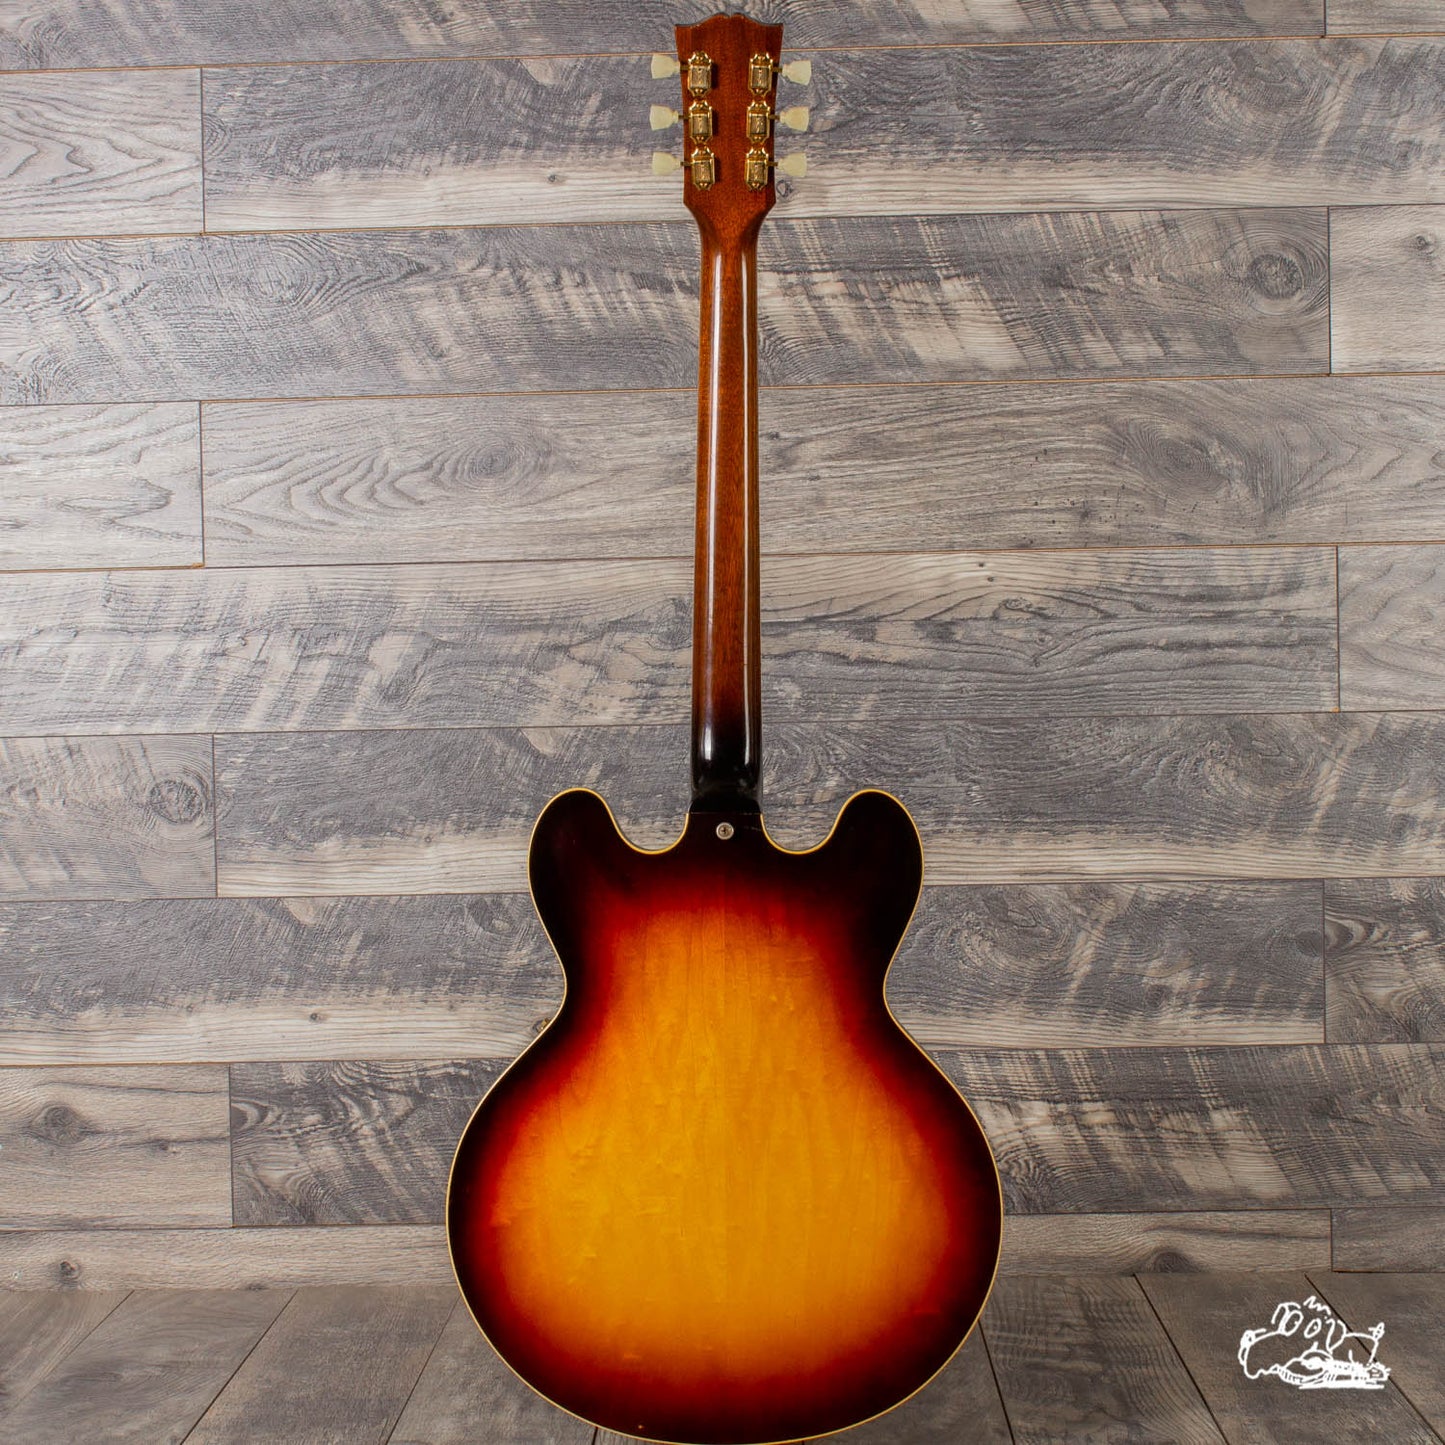 1961 Gibson ES-345TD